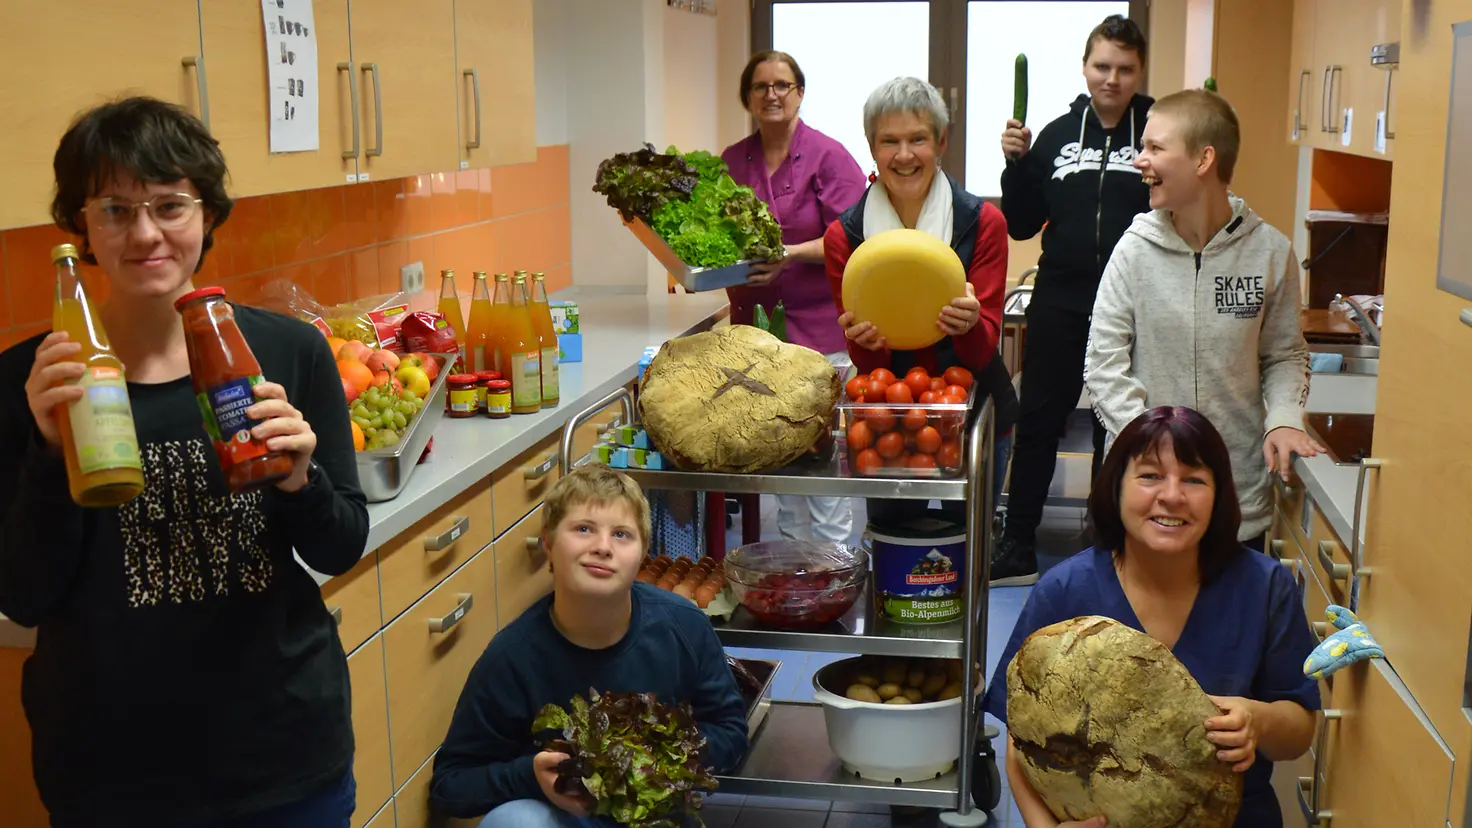 Schulpersonal und Schüler Rosenberg-Schule Bernkastel-Kues mit gesunden Lebensmitteln bei der Aktion "Ich kann kochen!"